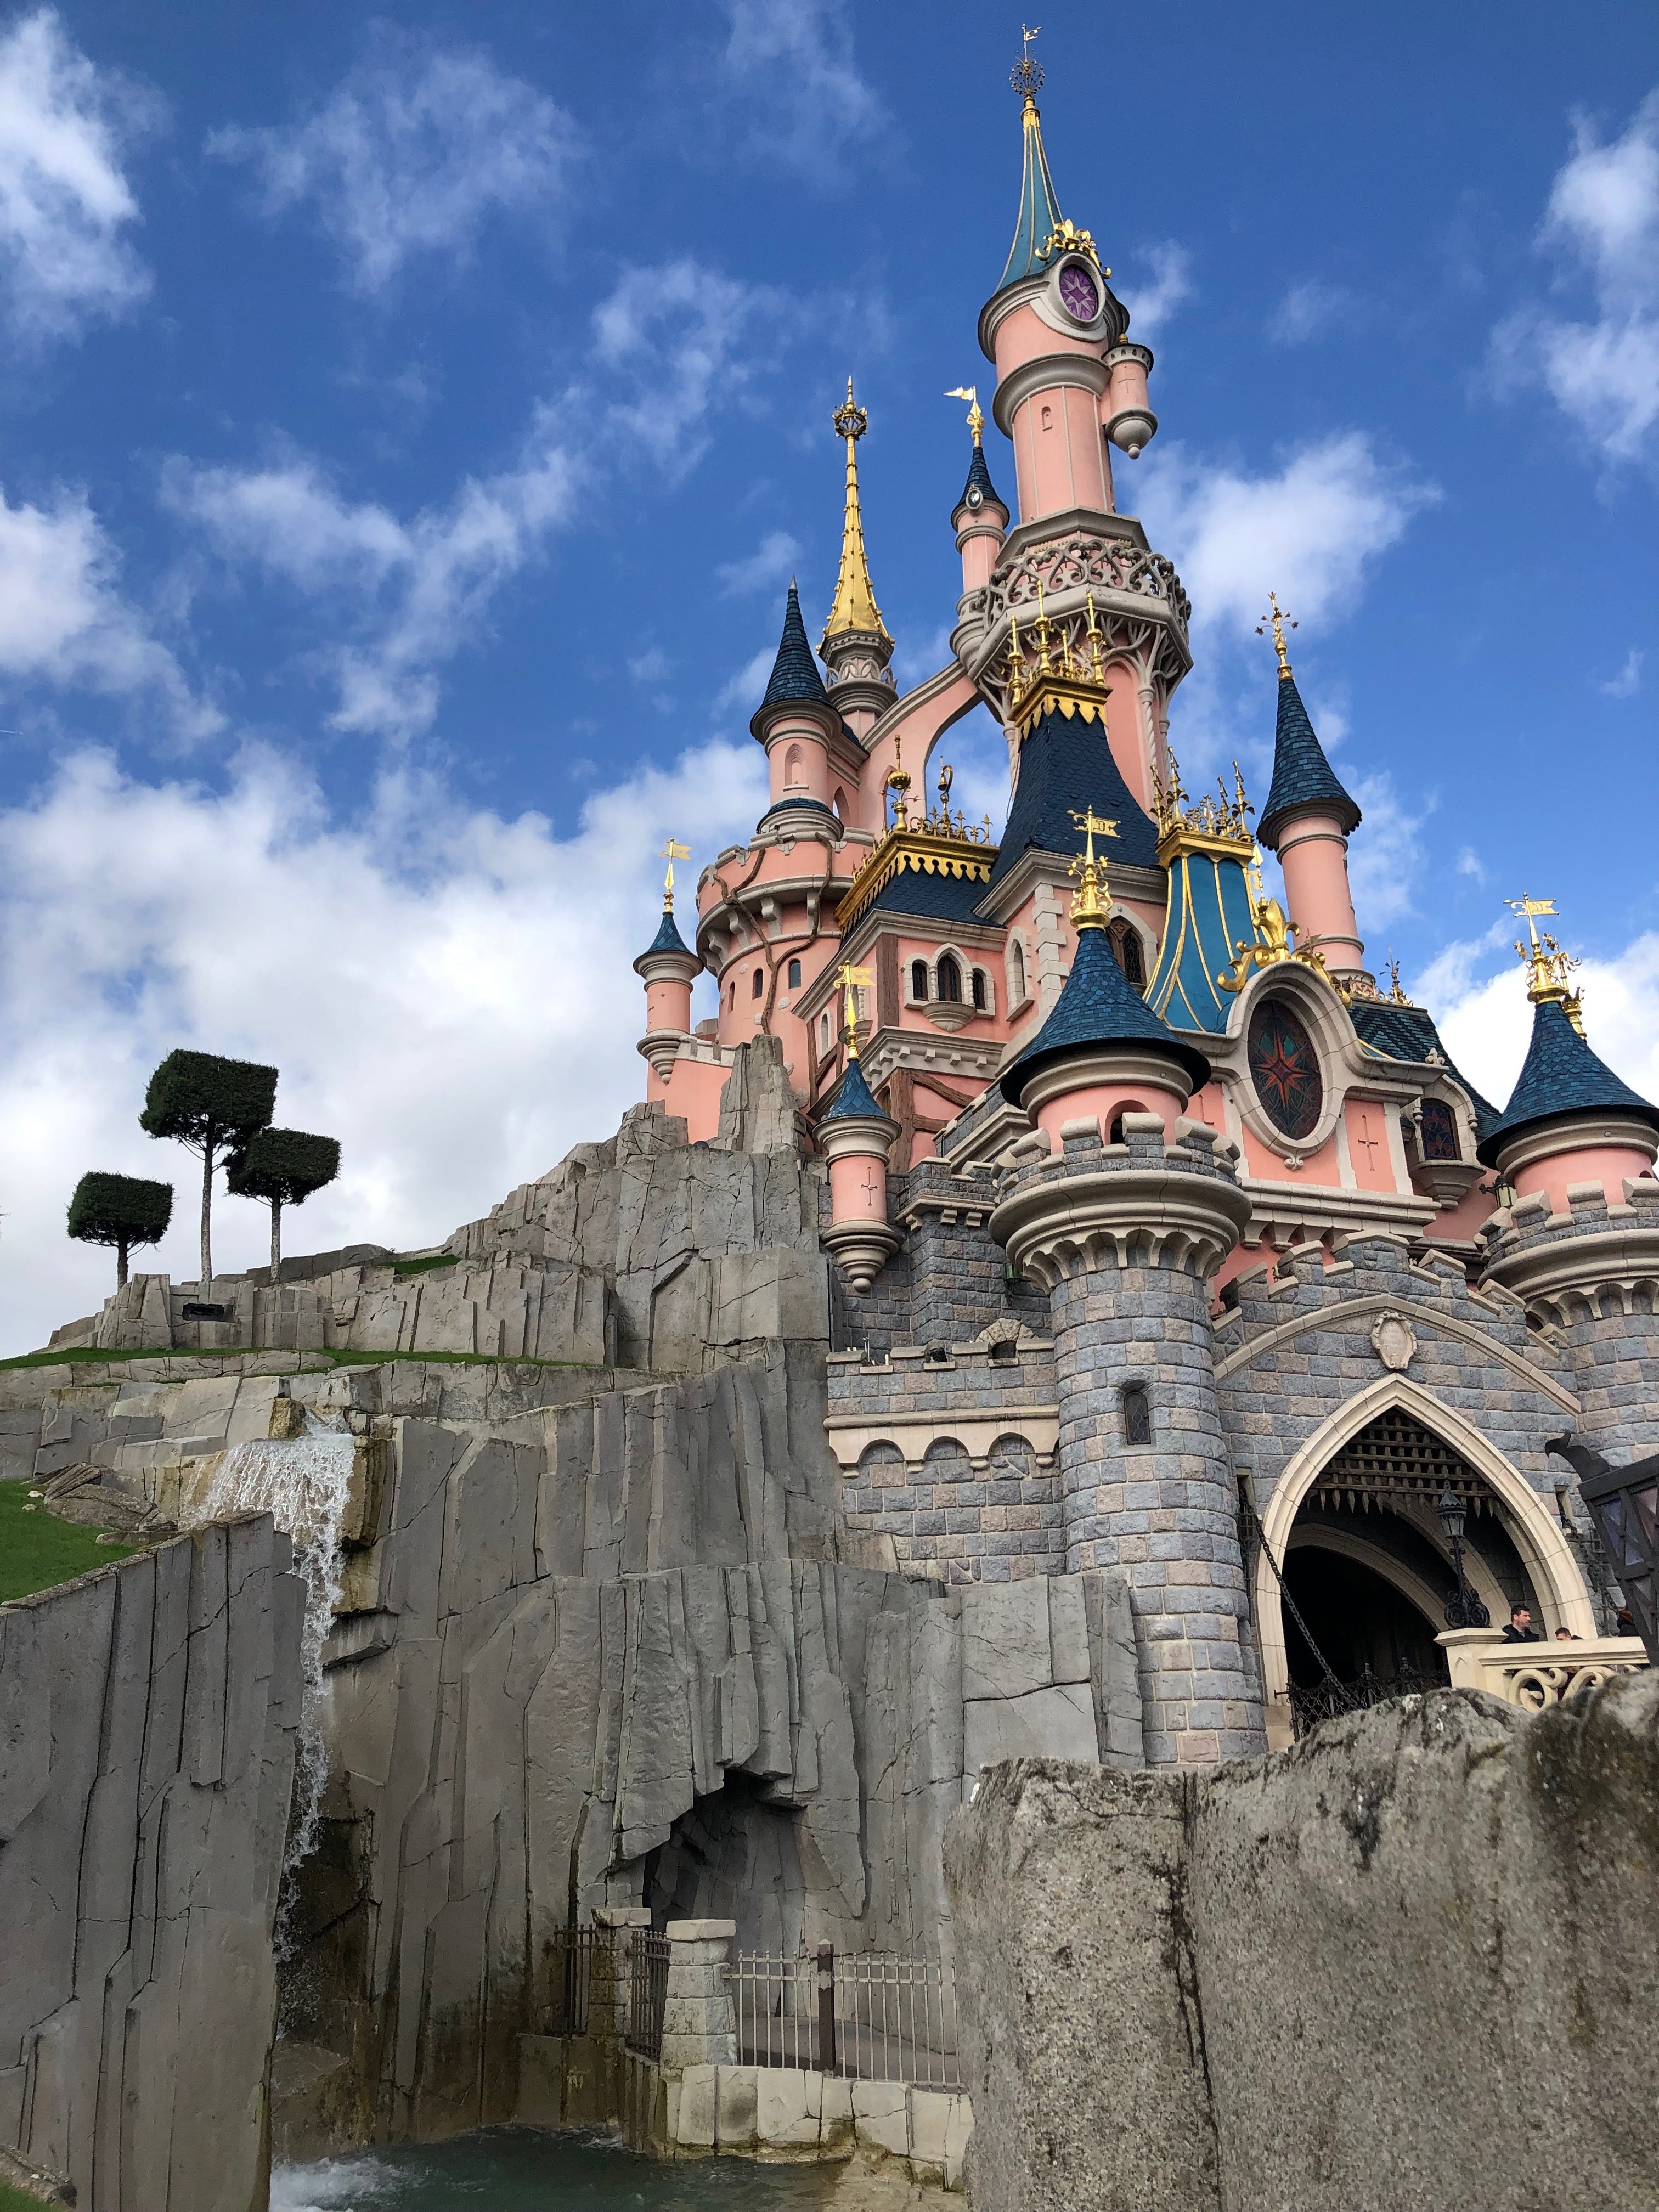 Disneyland Paris Reducing their Use of Plastics!